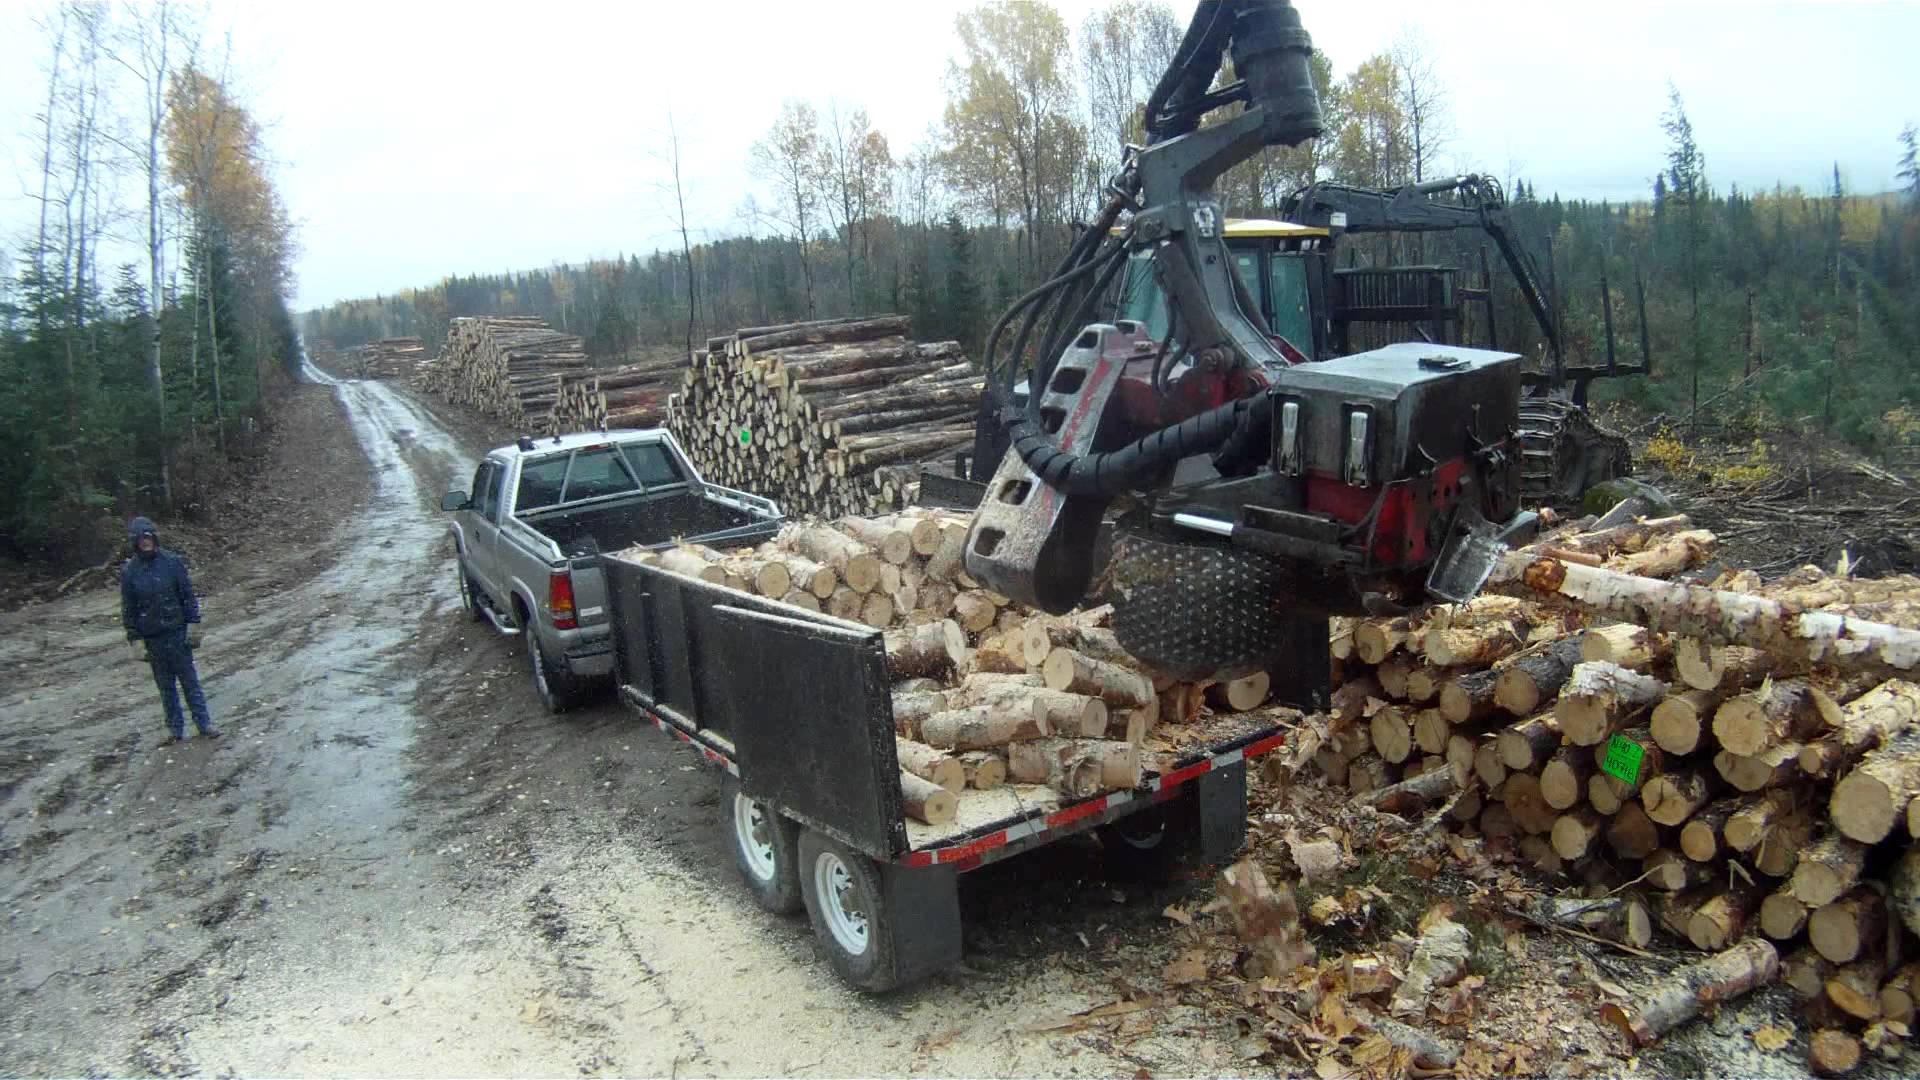 mobile splitter of firewood